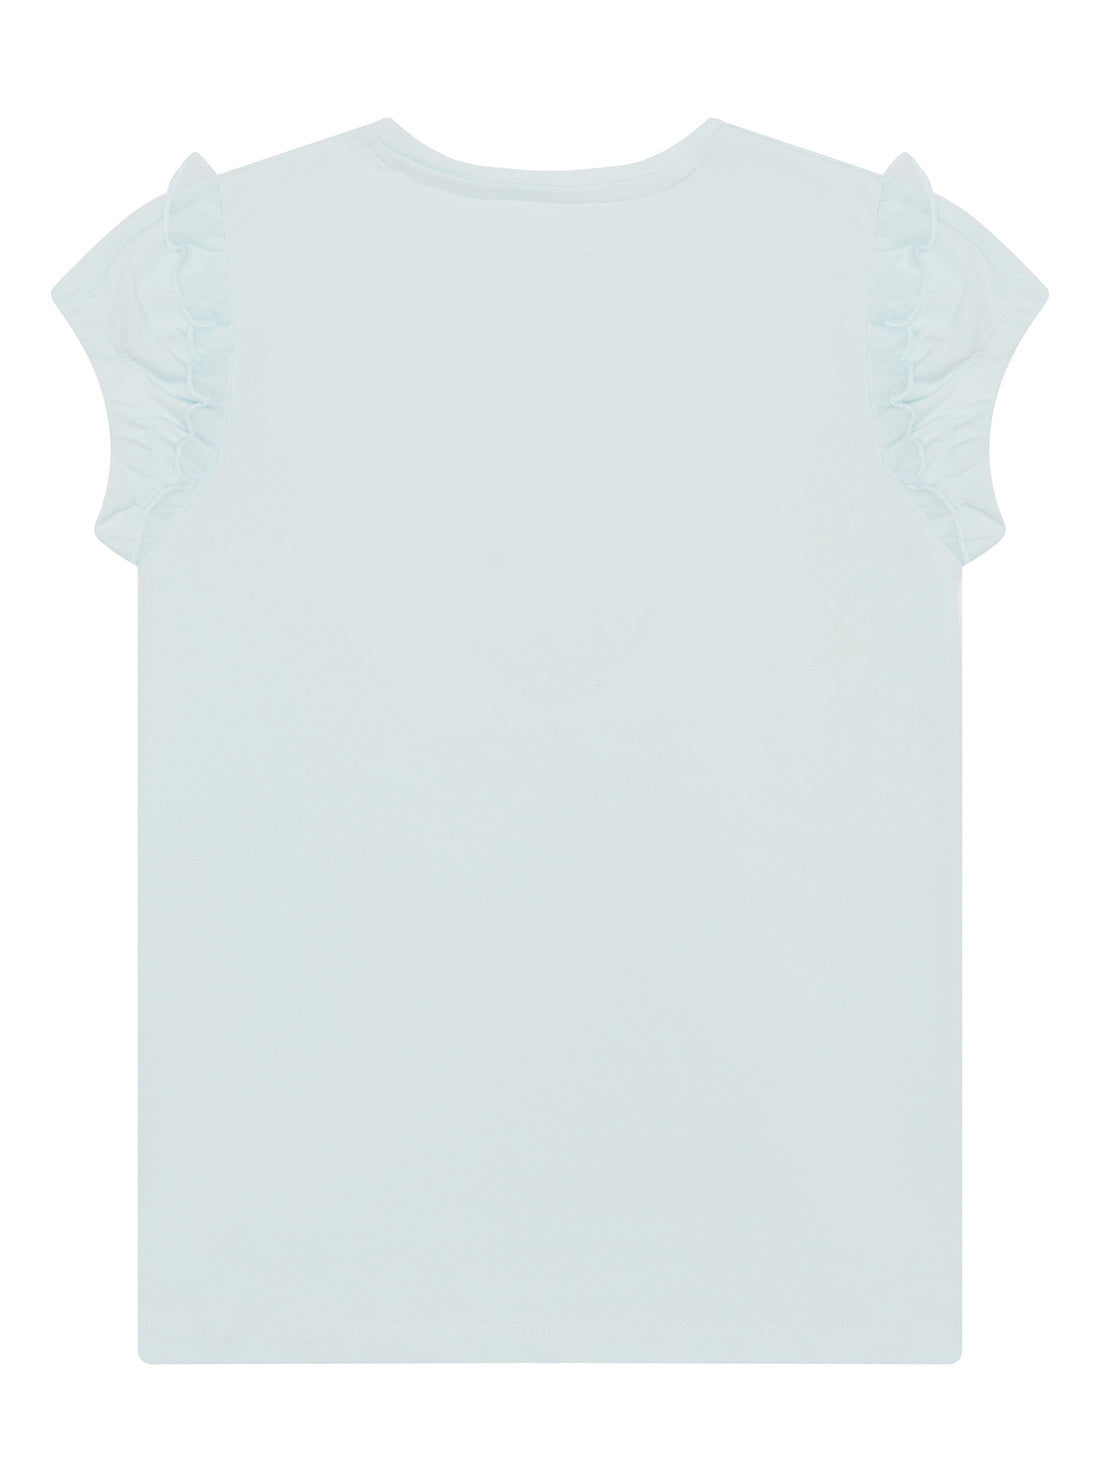 Celestite Flower Sequin T-Shirt (2-7)